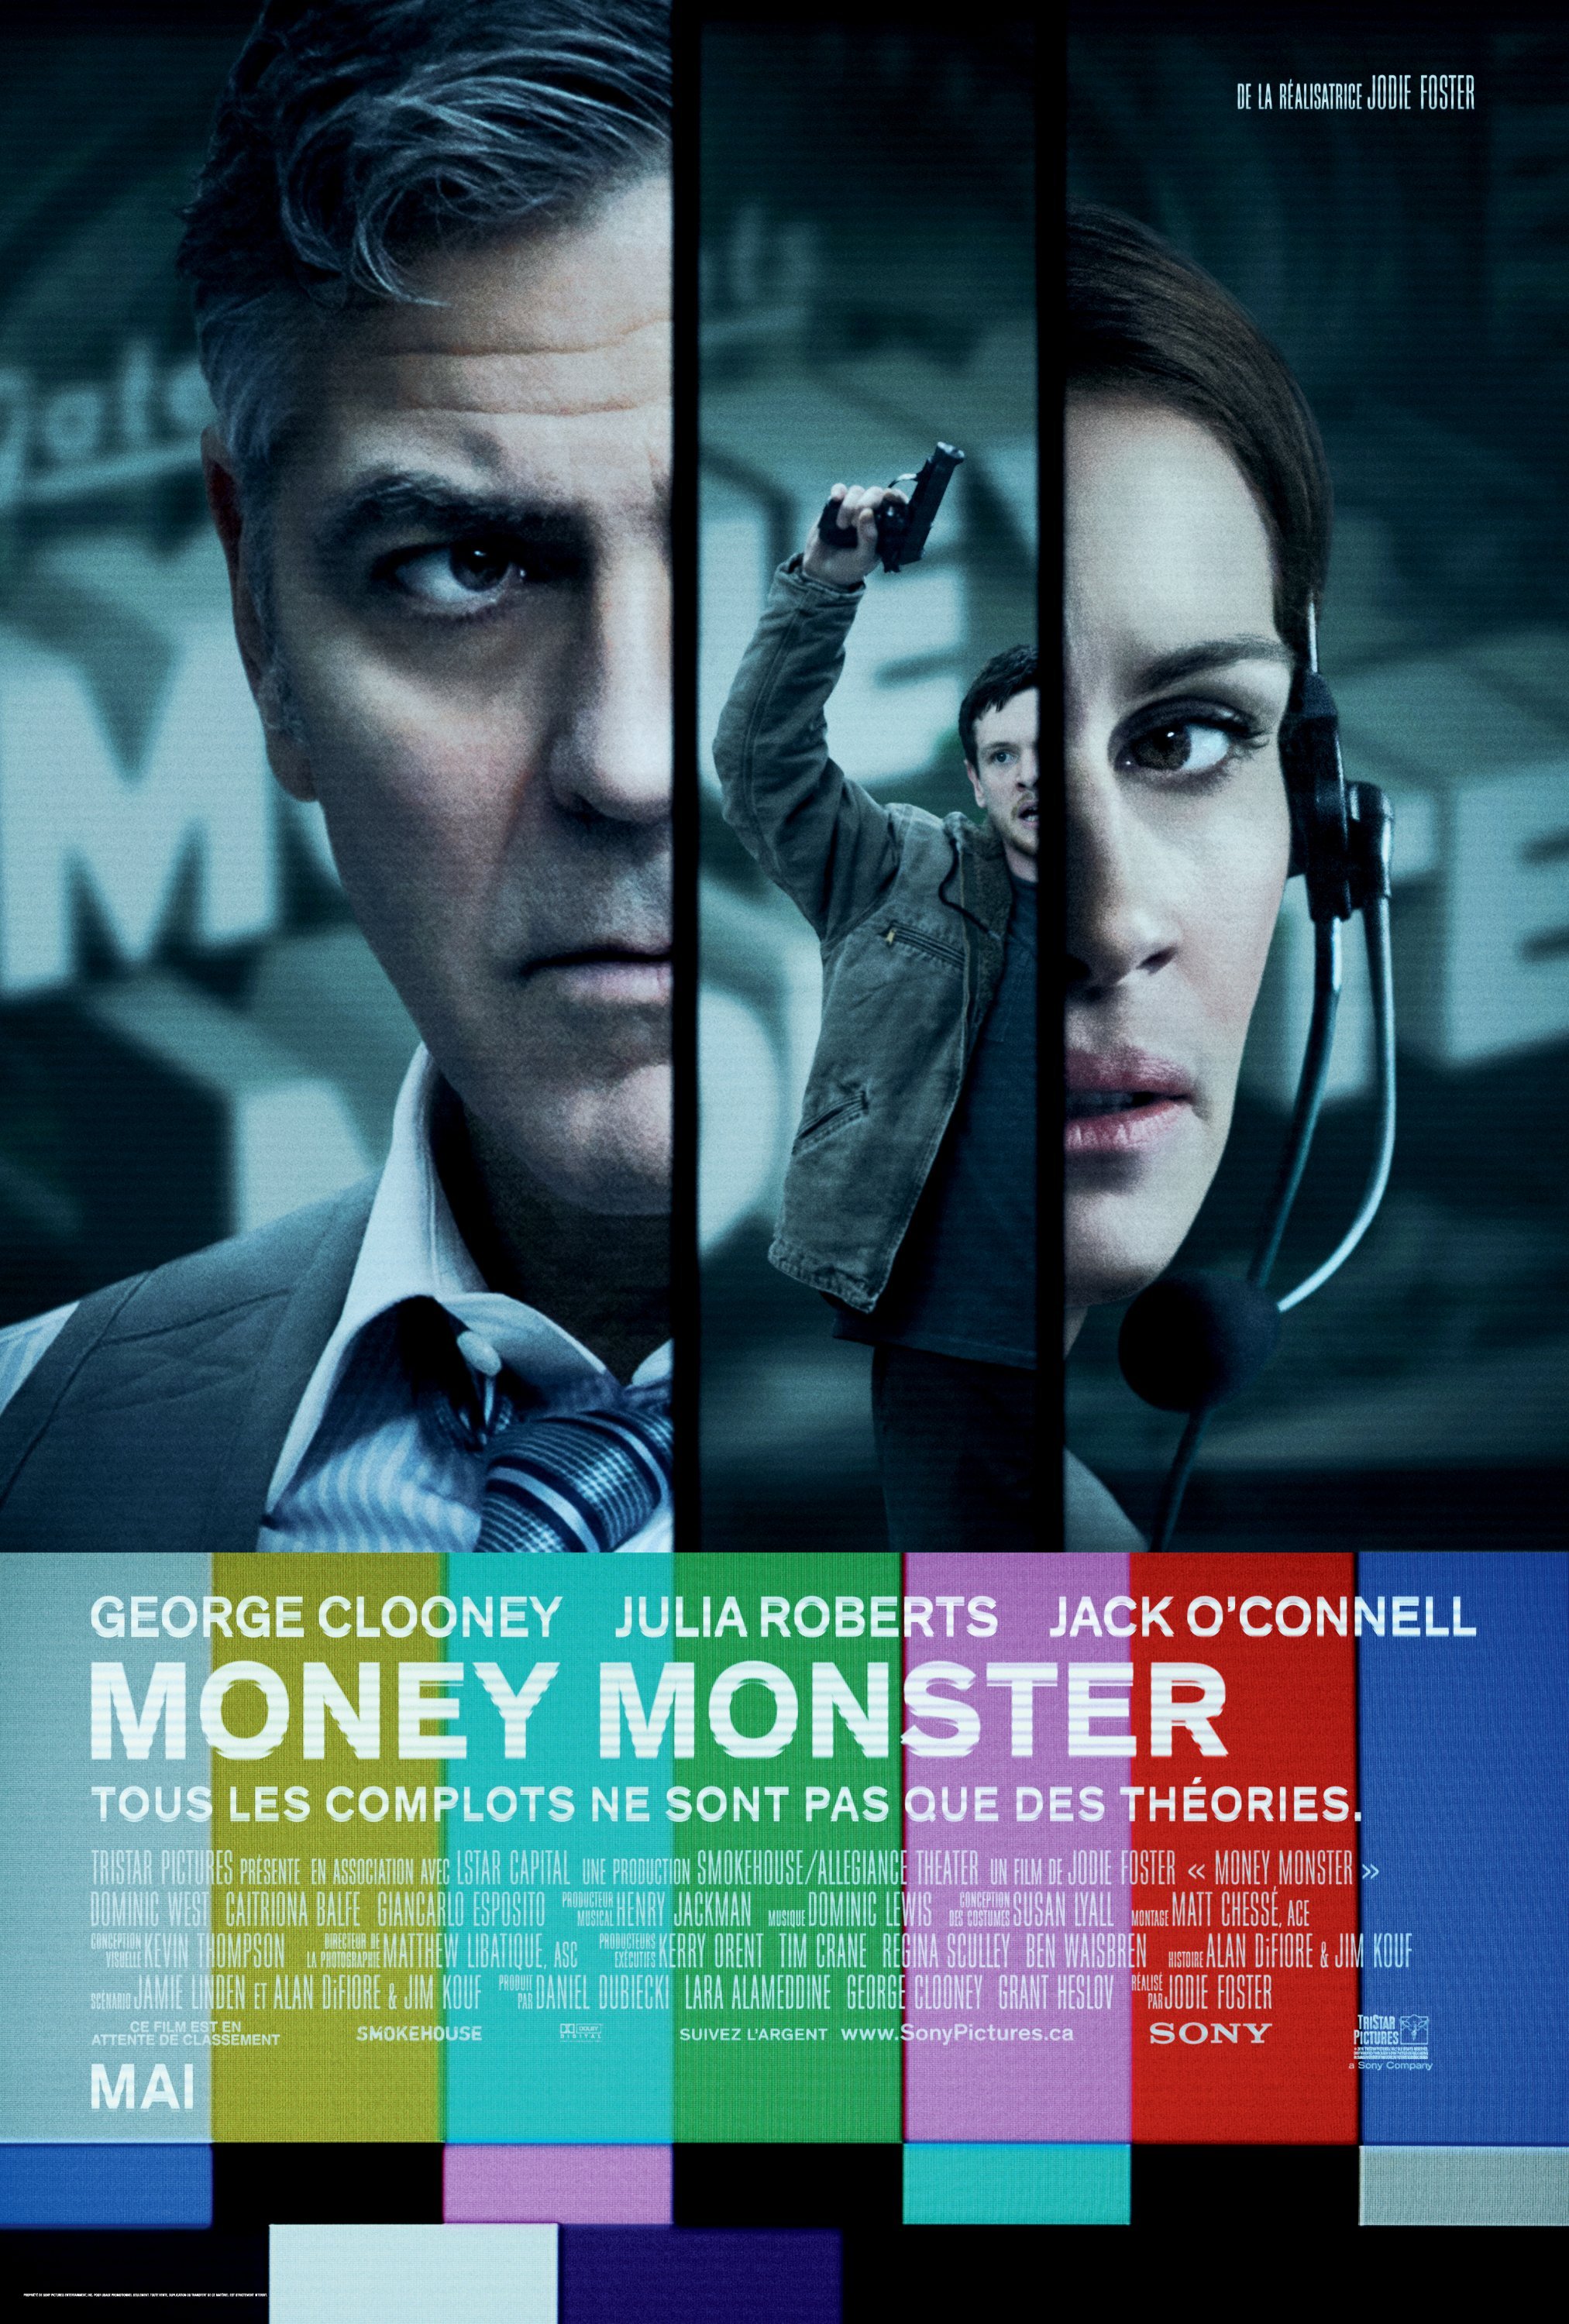 Poster of the movie Money Monster v.f.